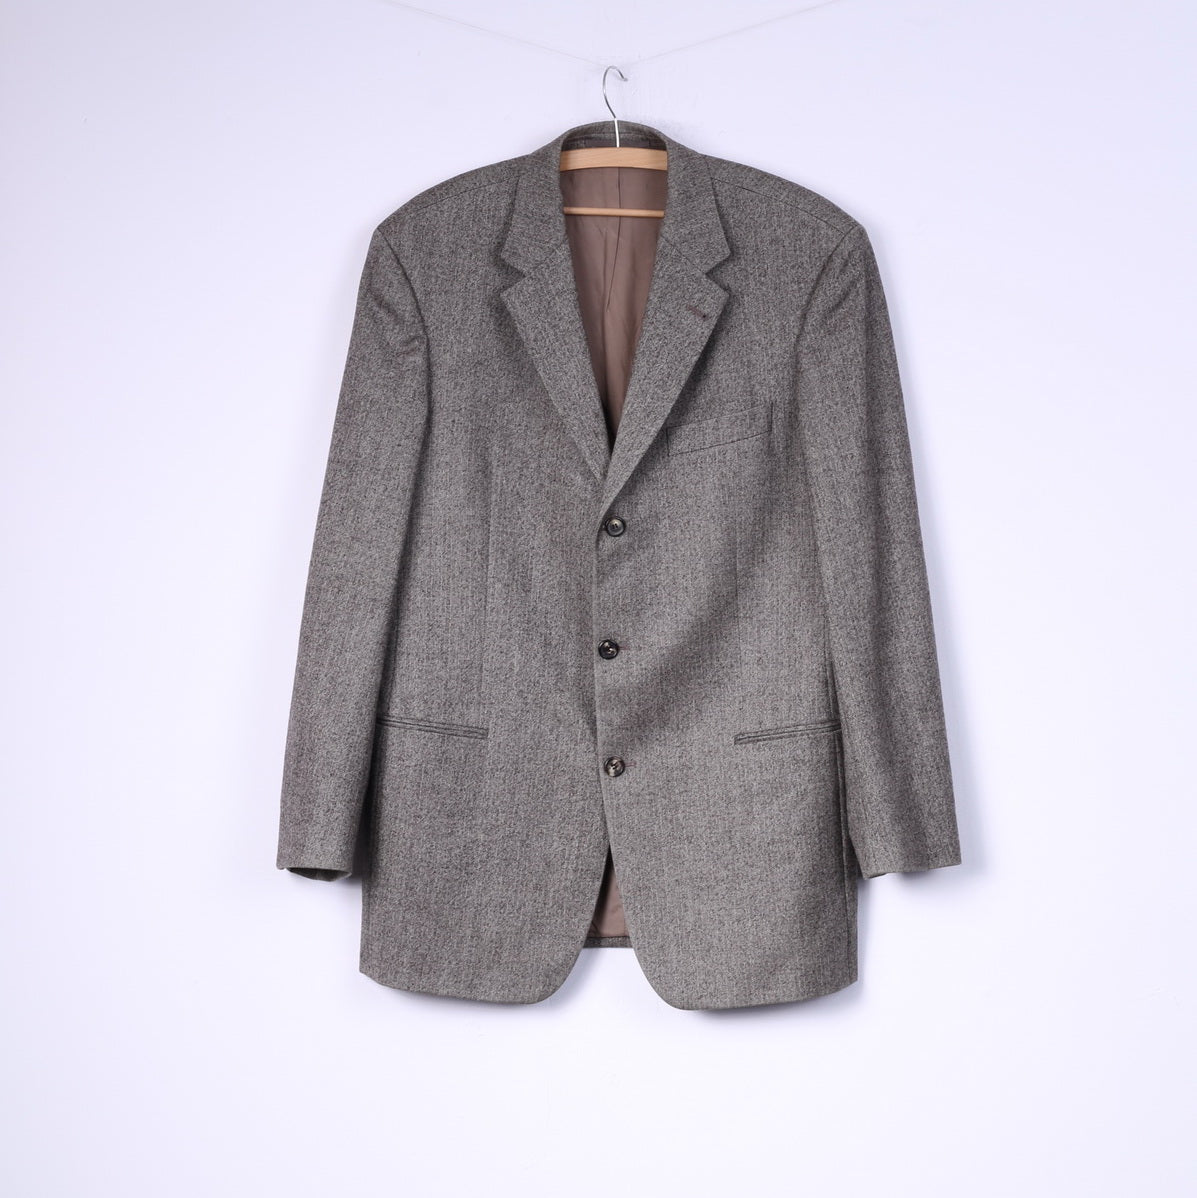 Hugo Boss Men 102 40 Suit Vintage Brown Herringbone Wool Einstein/Sigma